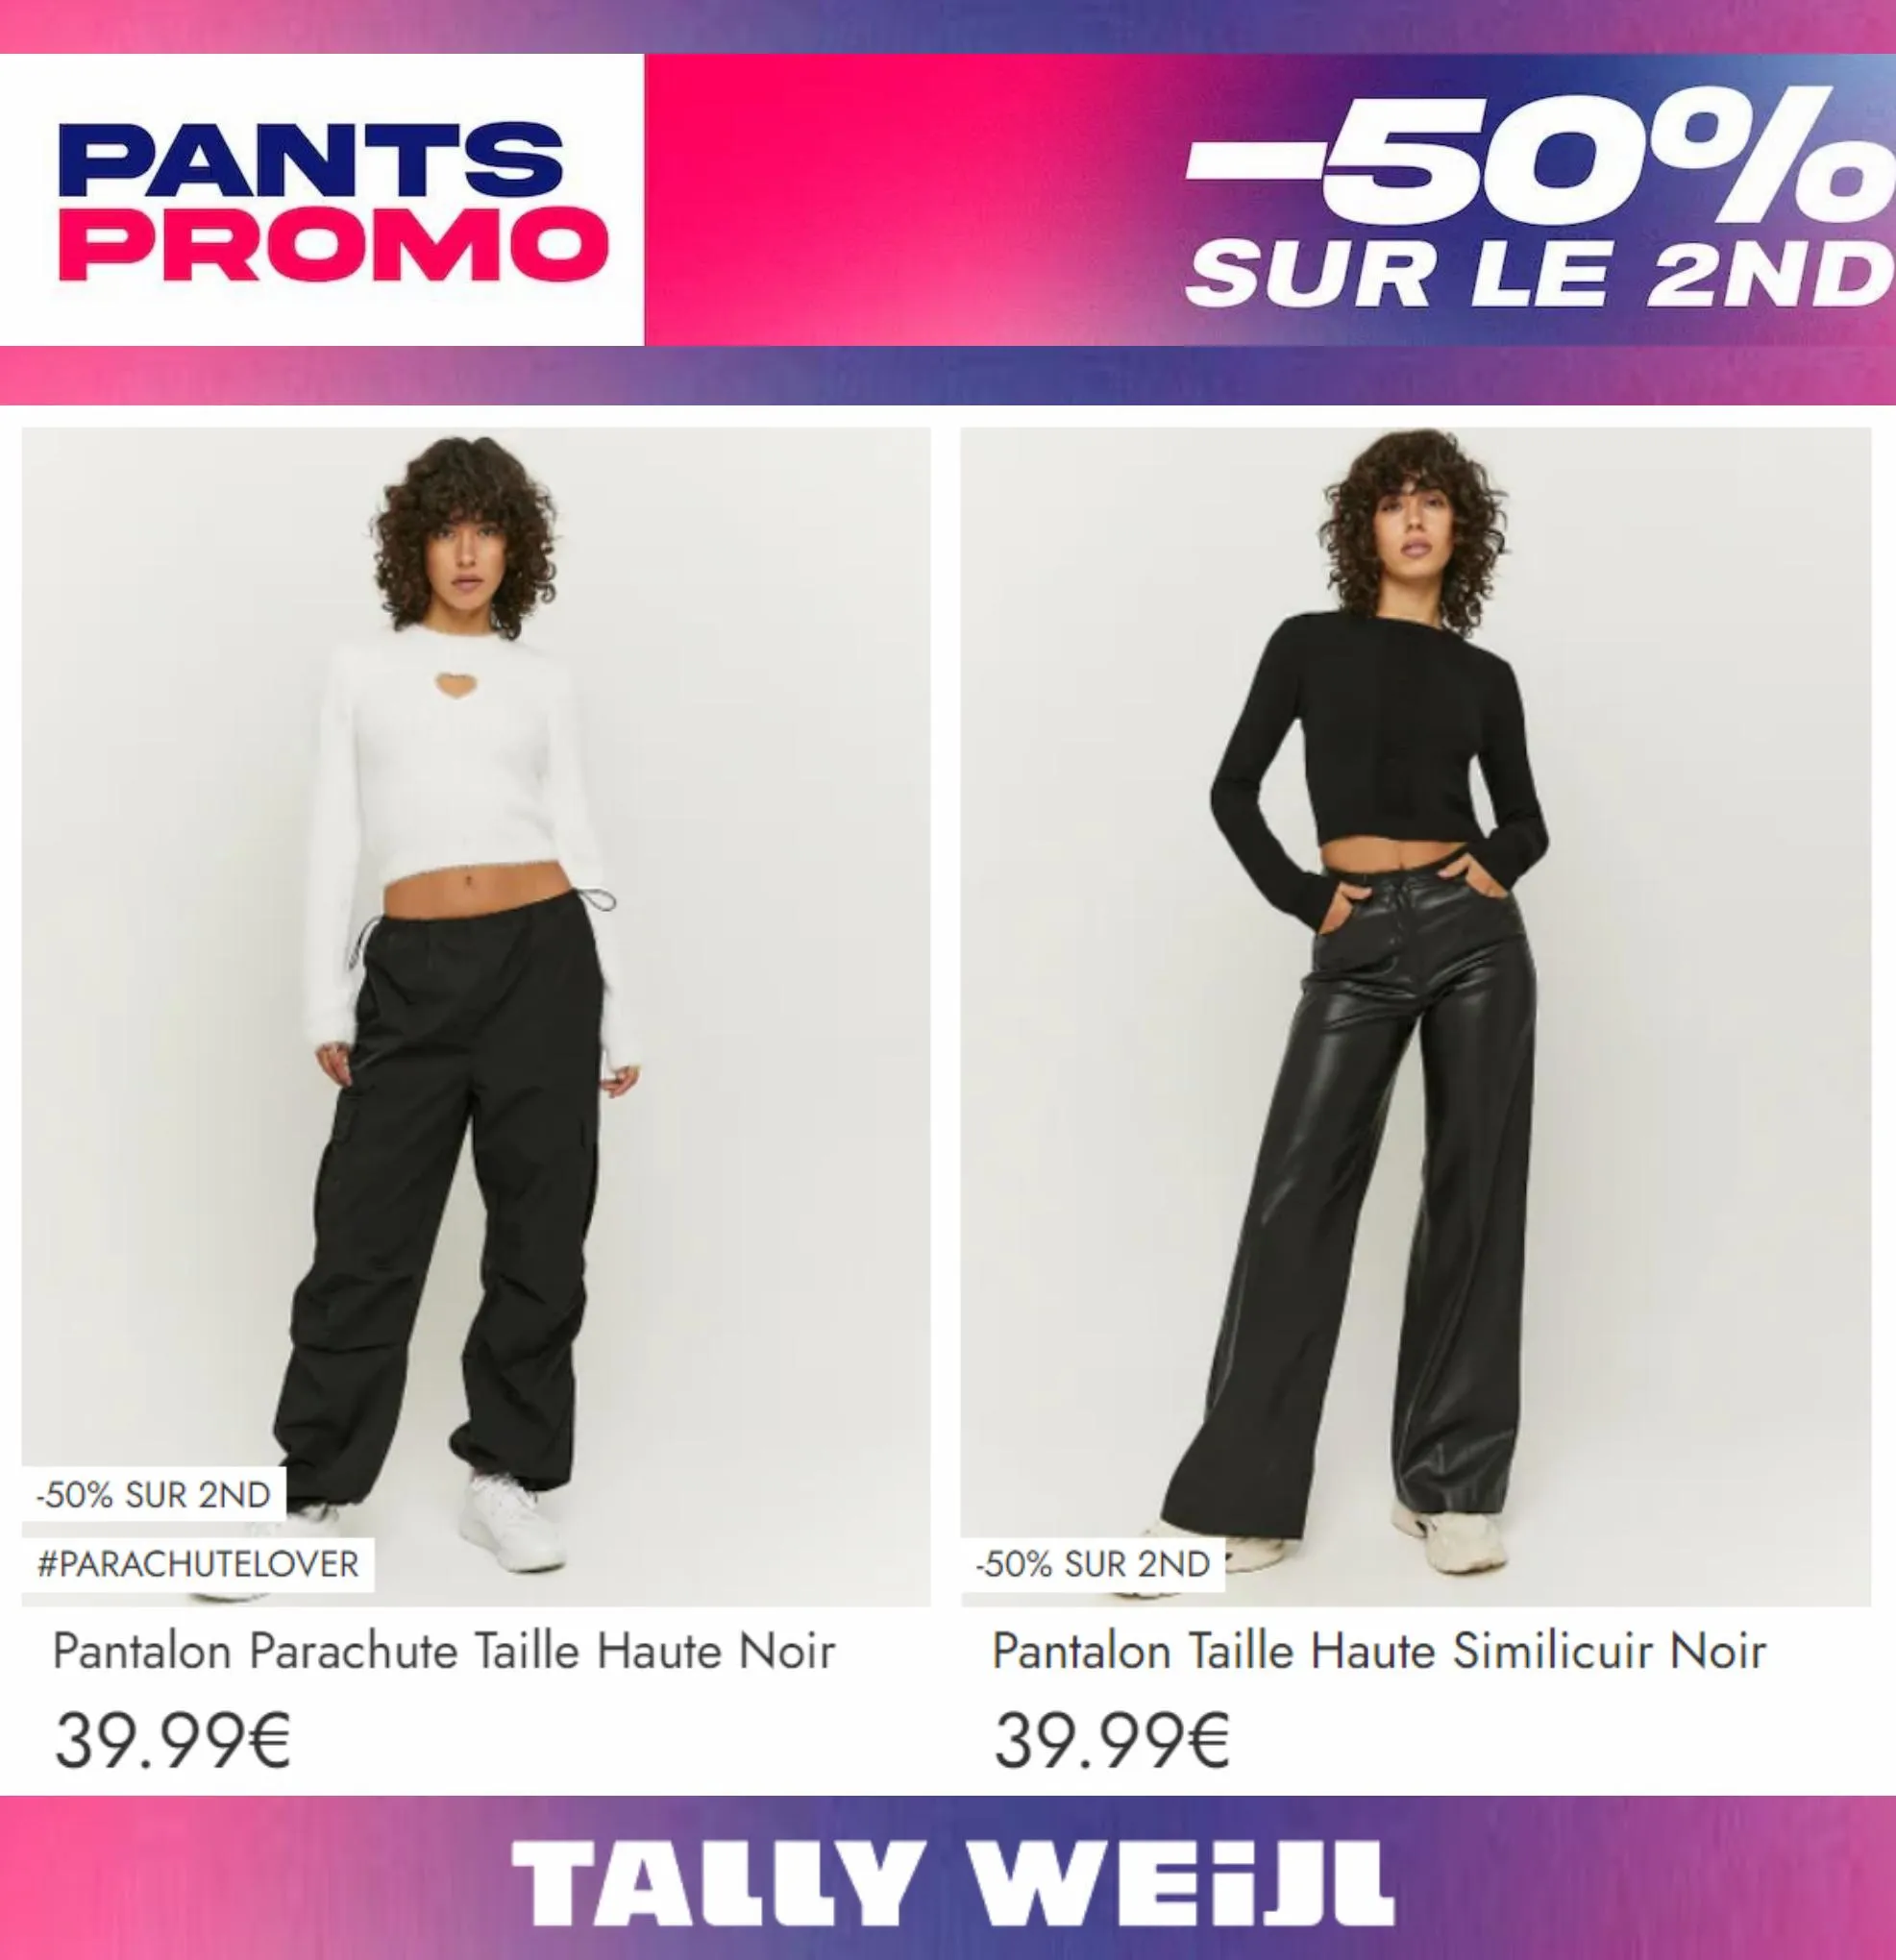 Catalogue Pants Promo -50% sur le 2nd*, page 00003